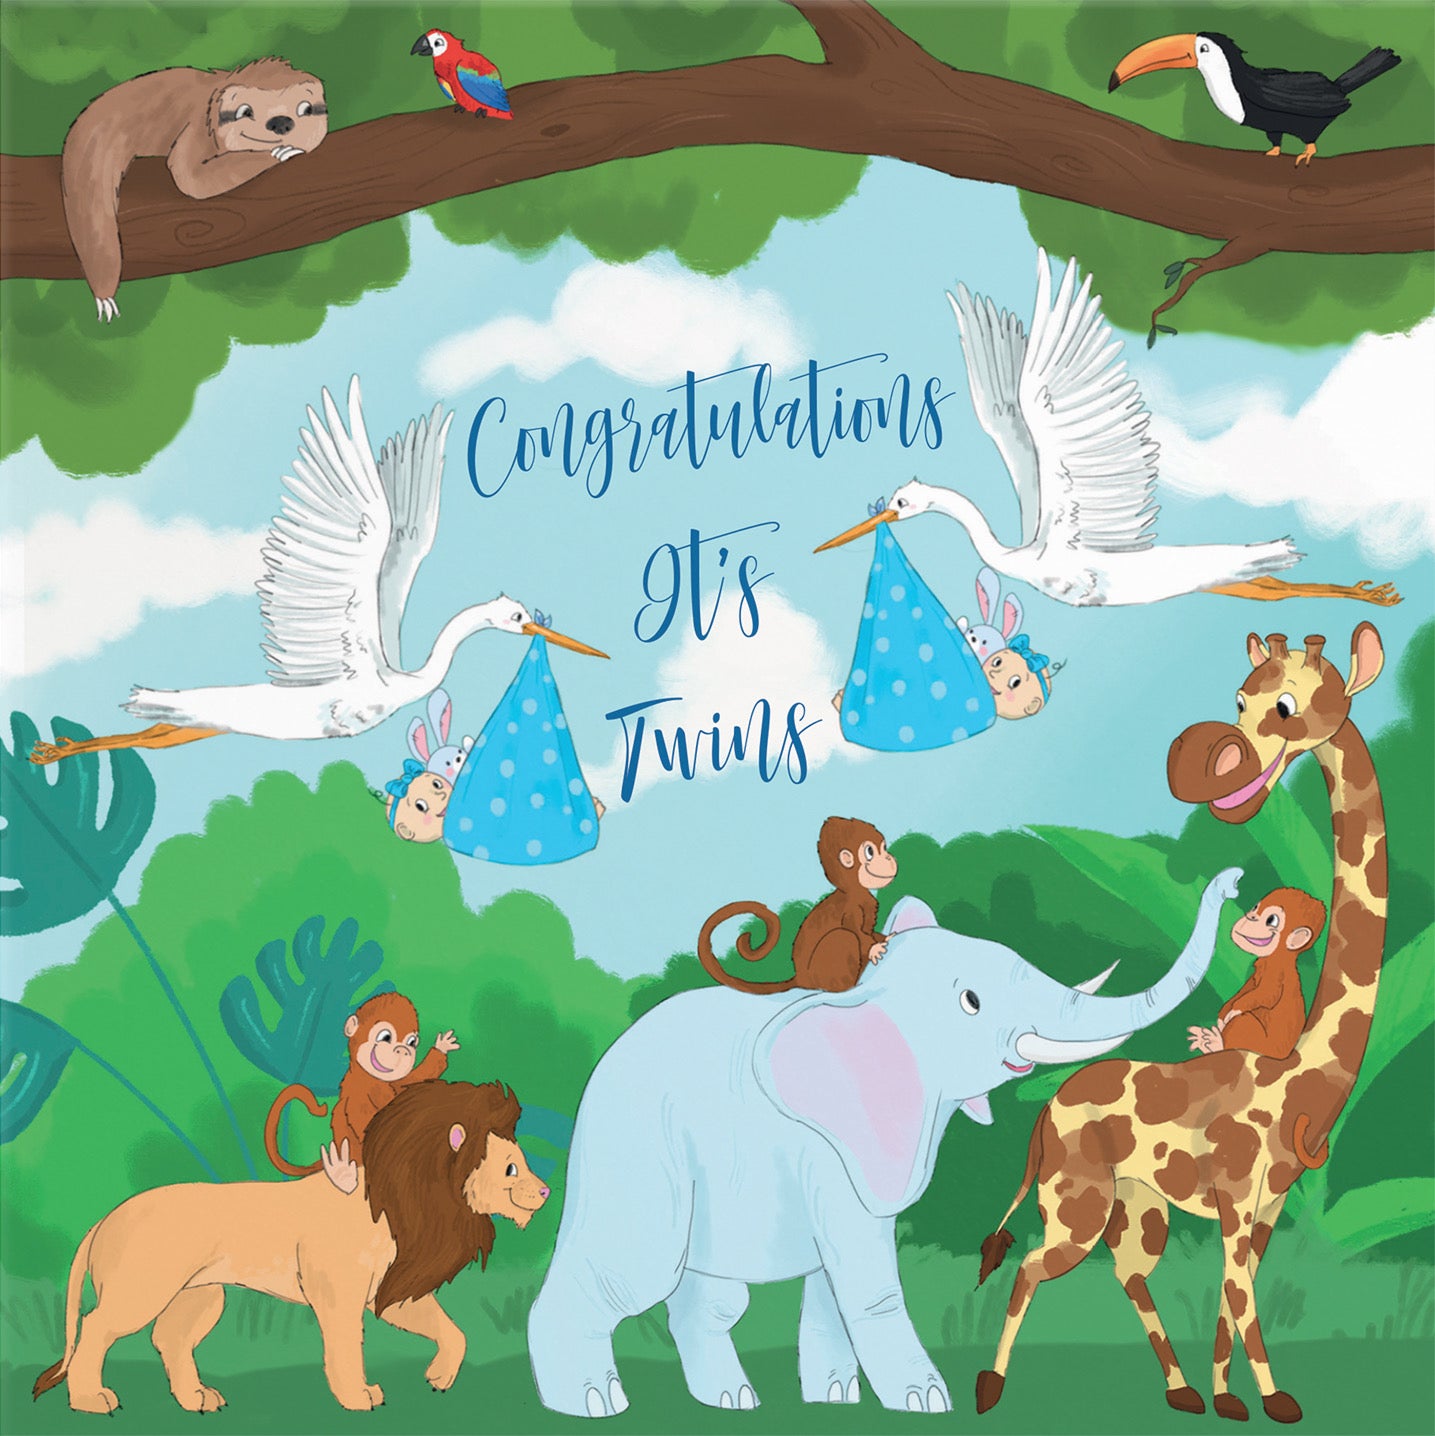 New Baby Boy Twins Congratulations Card Stork Jungle - Default Title (B09VMD797T)